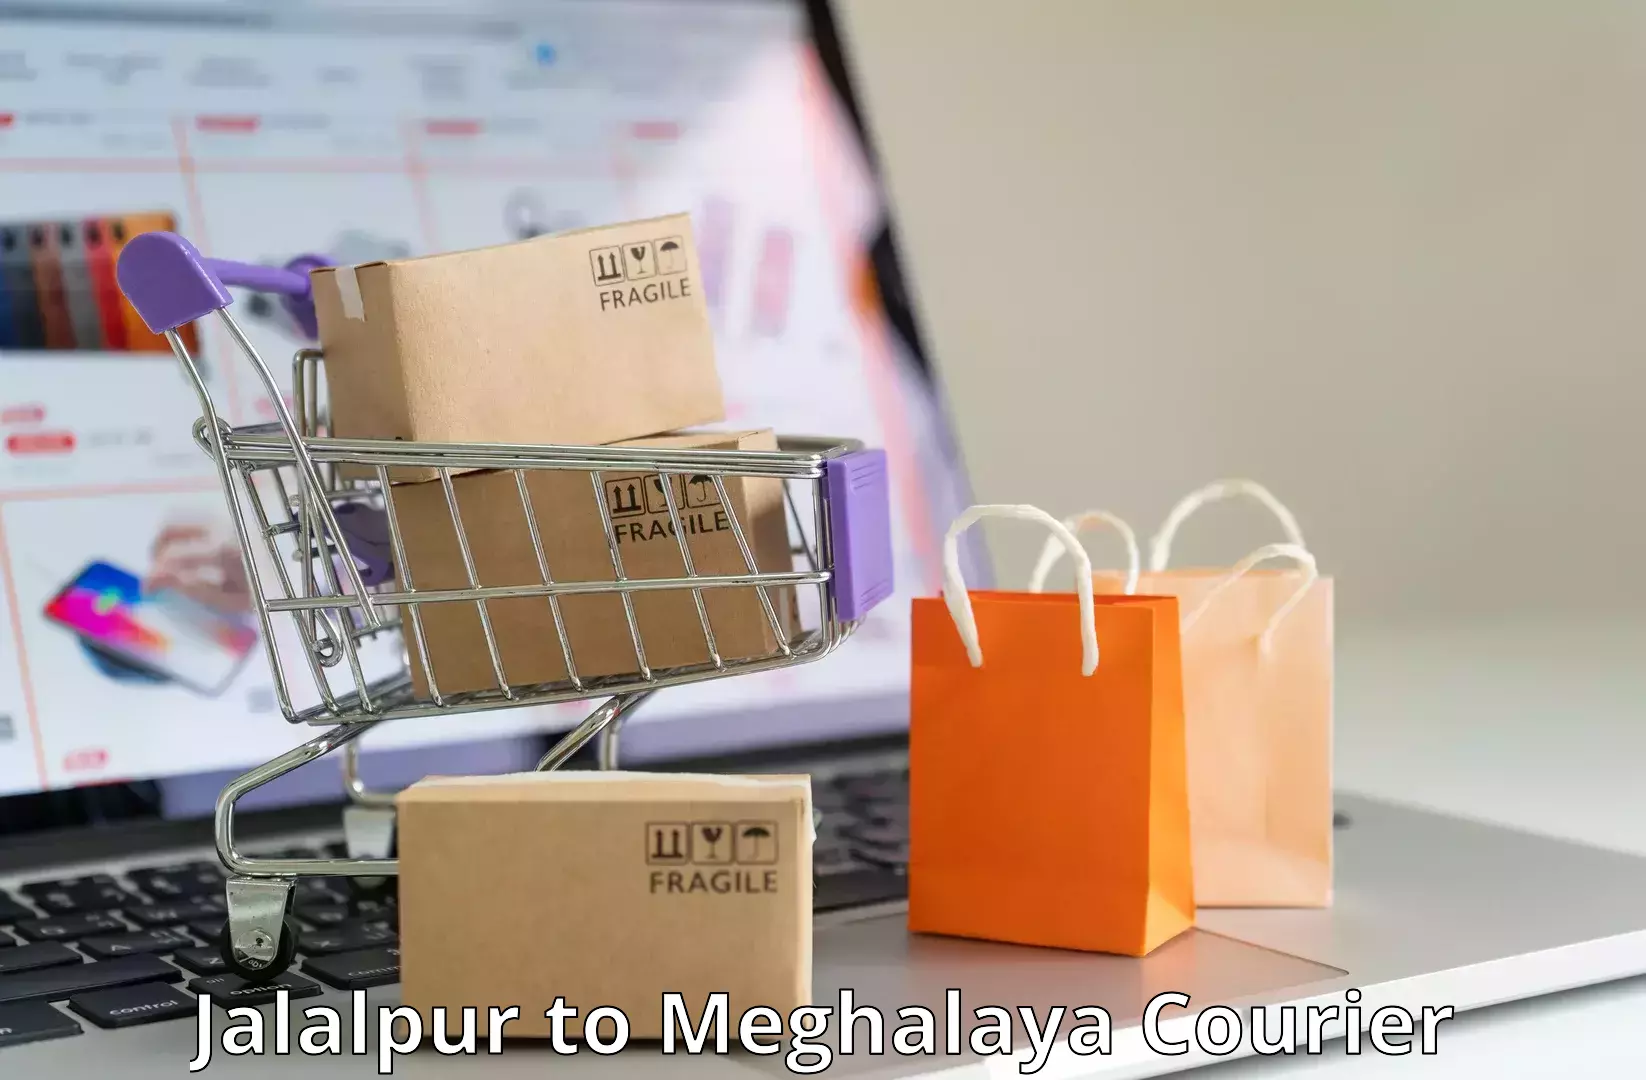 High-speed parcel service Jalalpur to Garobadha